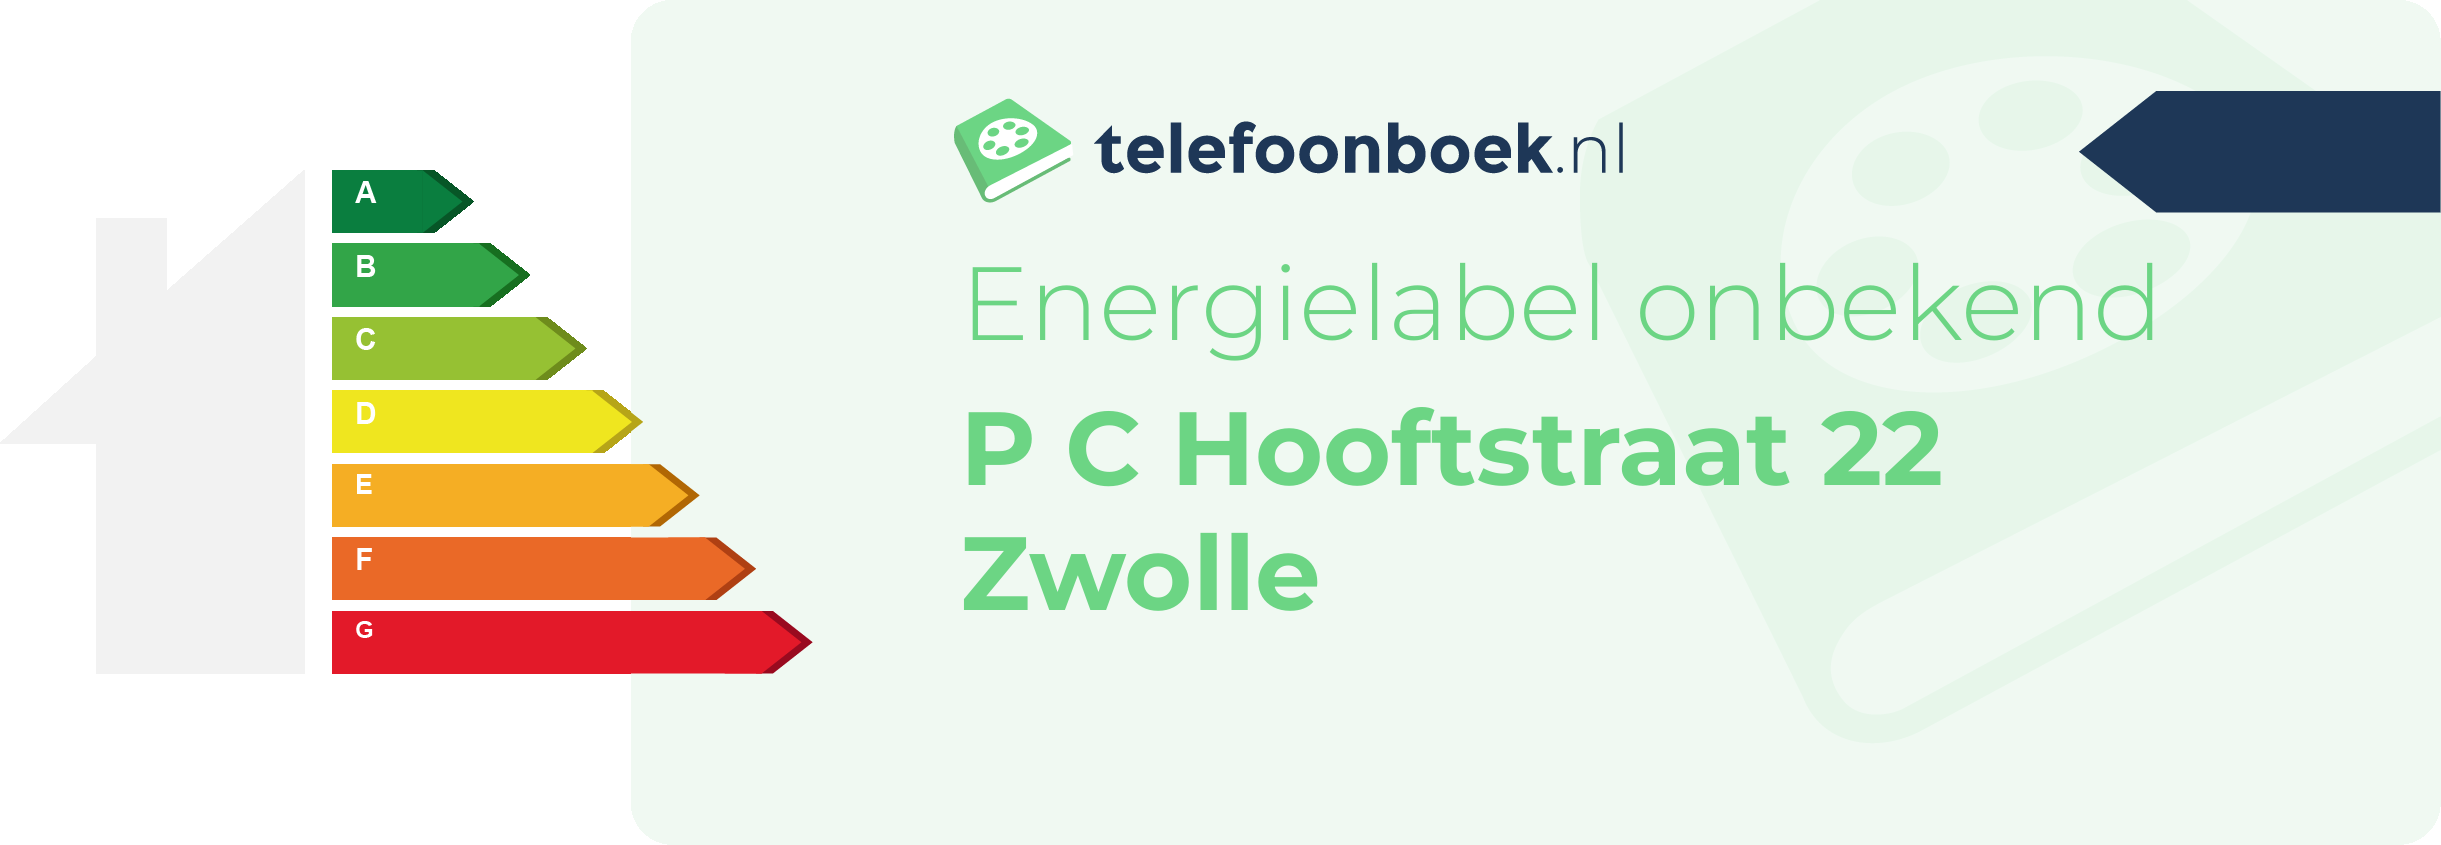 Energielabel P C Hooftstraat 22 Zwolle